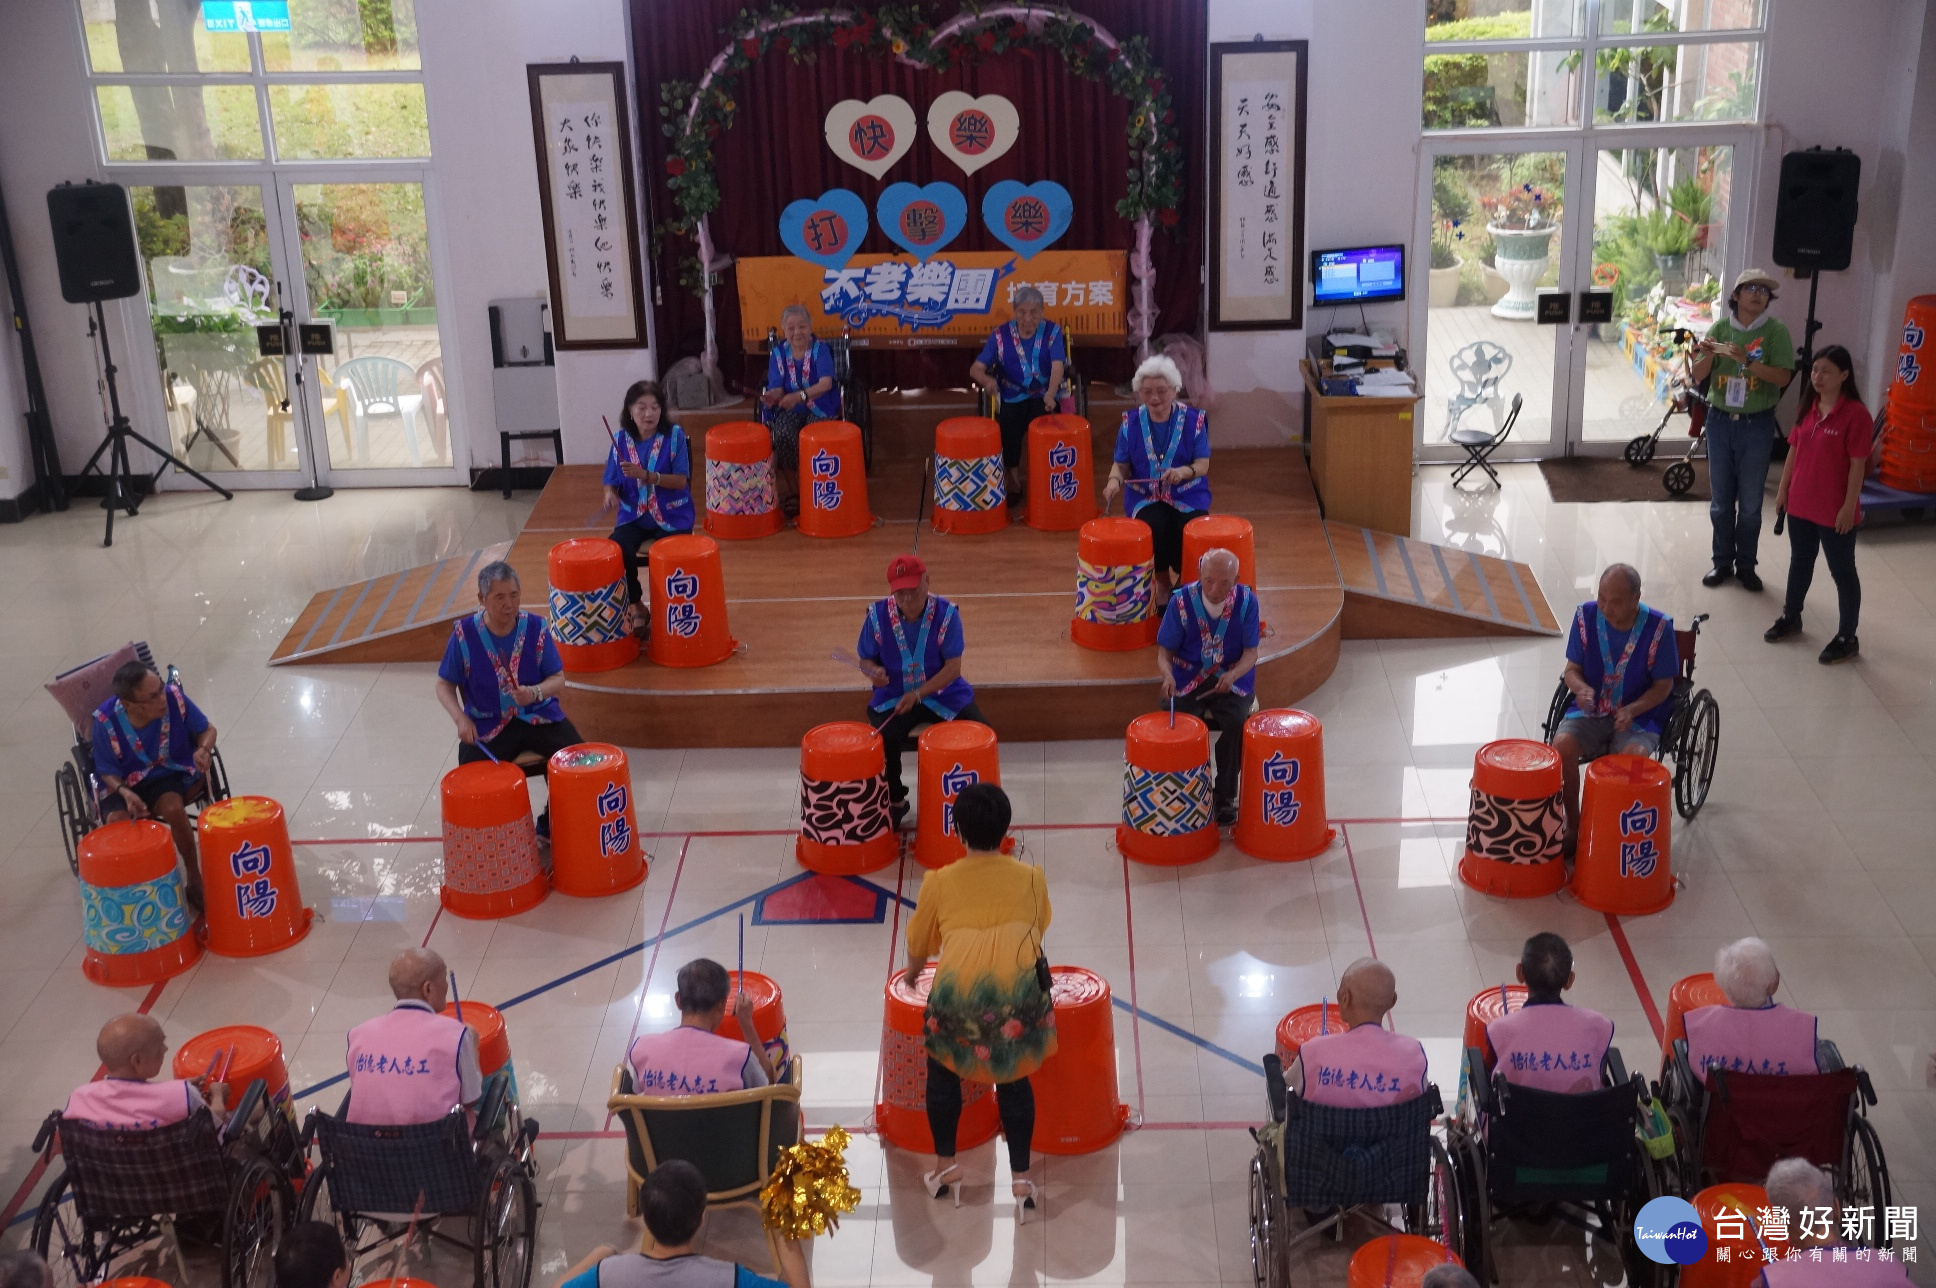 楊梅區大合不老樂團，拜訪成立九年的怡德老人長照中心向陽打擊樂團，雙方交流氣氛熱烈。